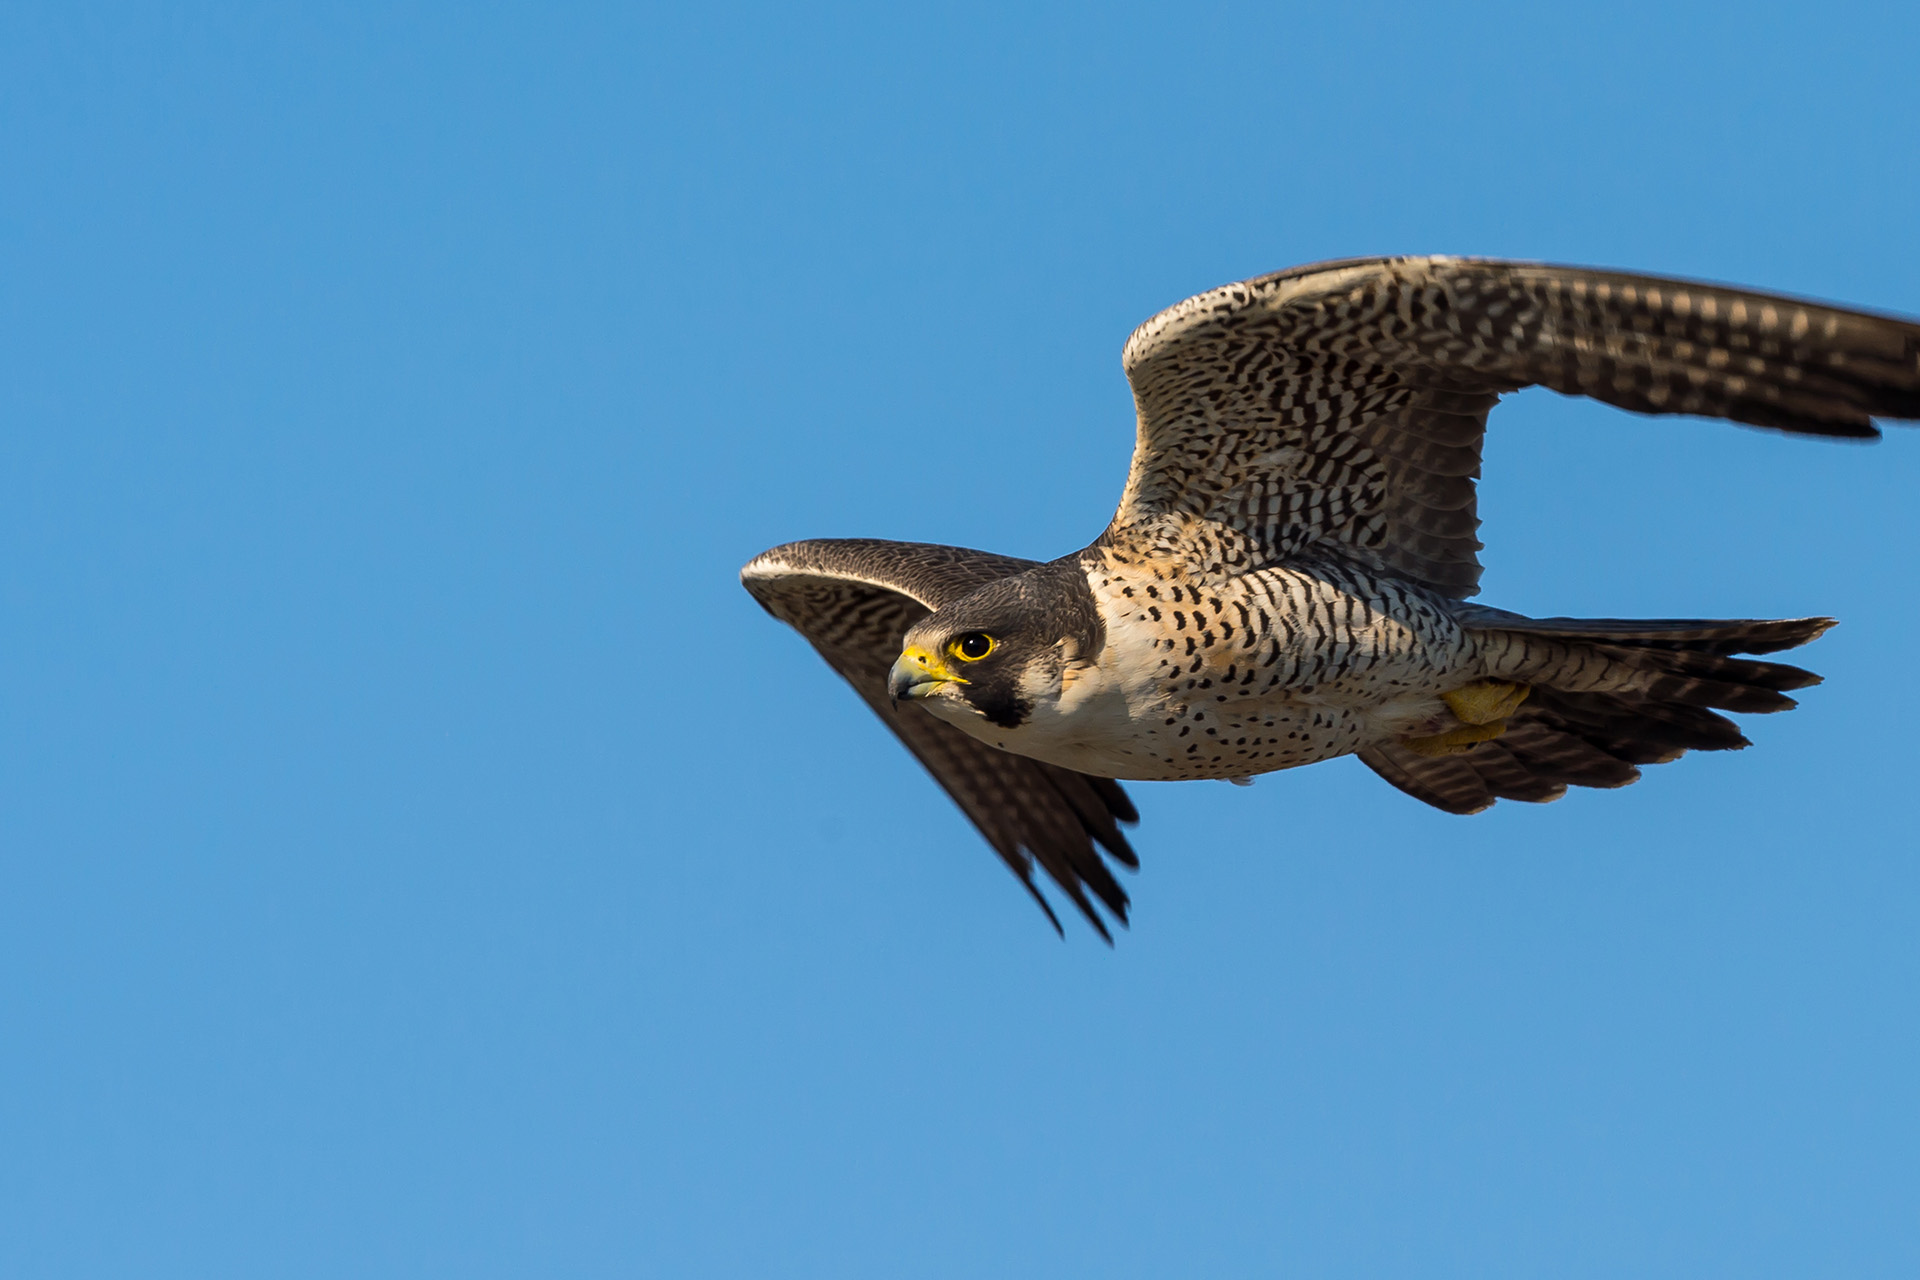 Peregrine Falcon soaring